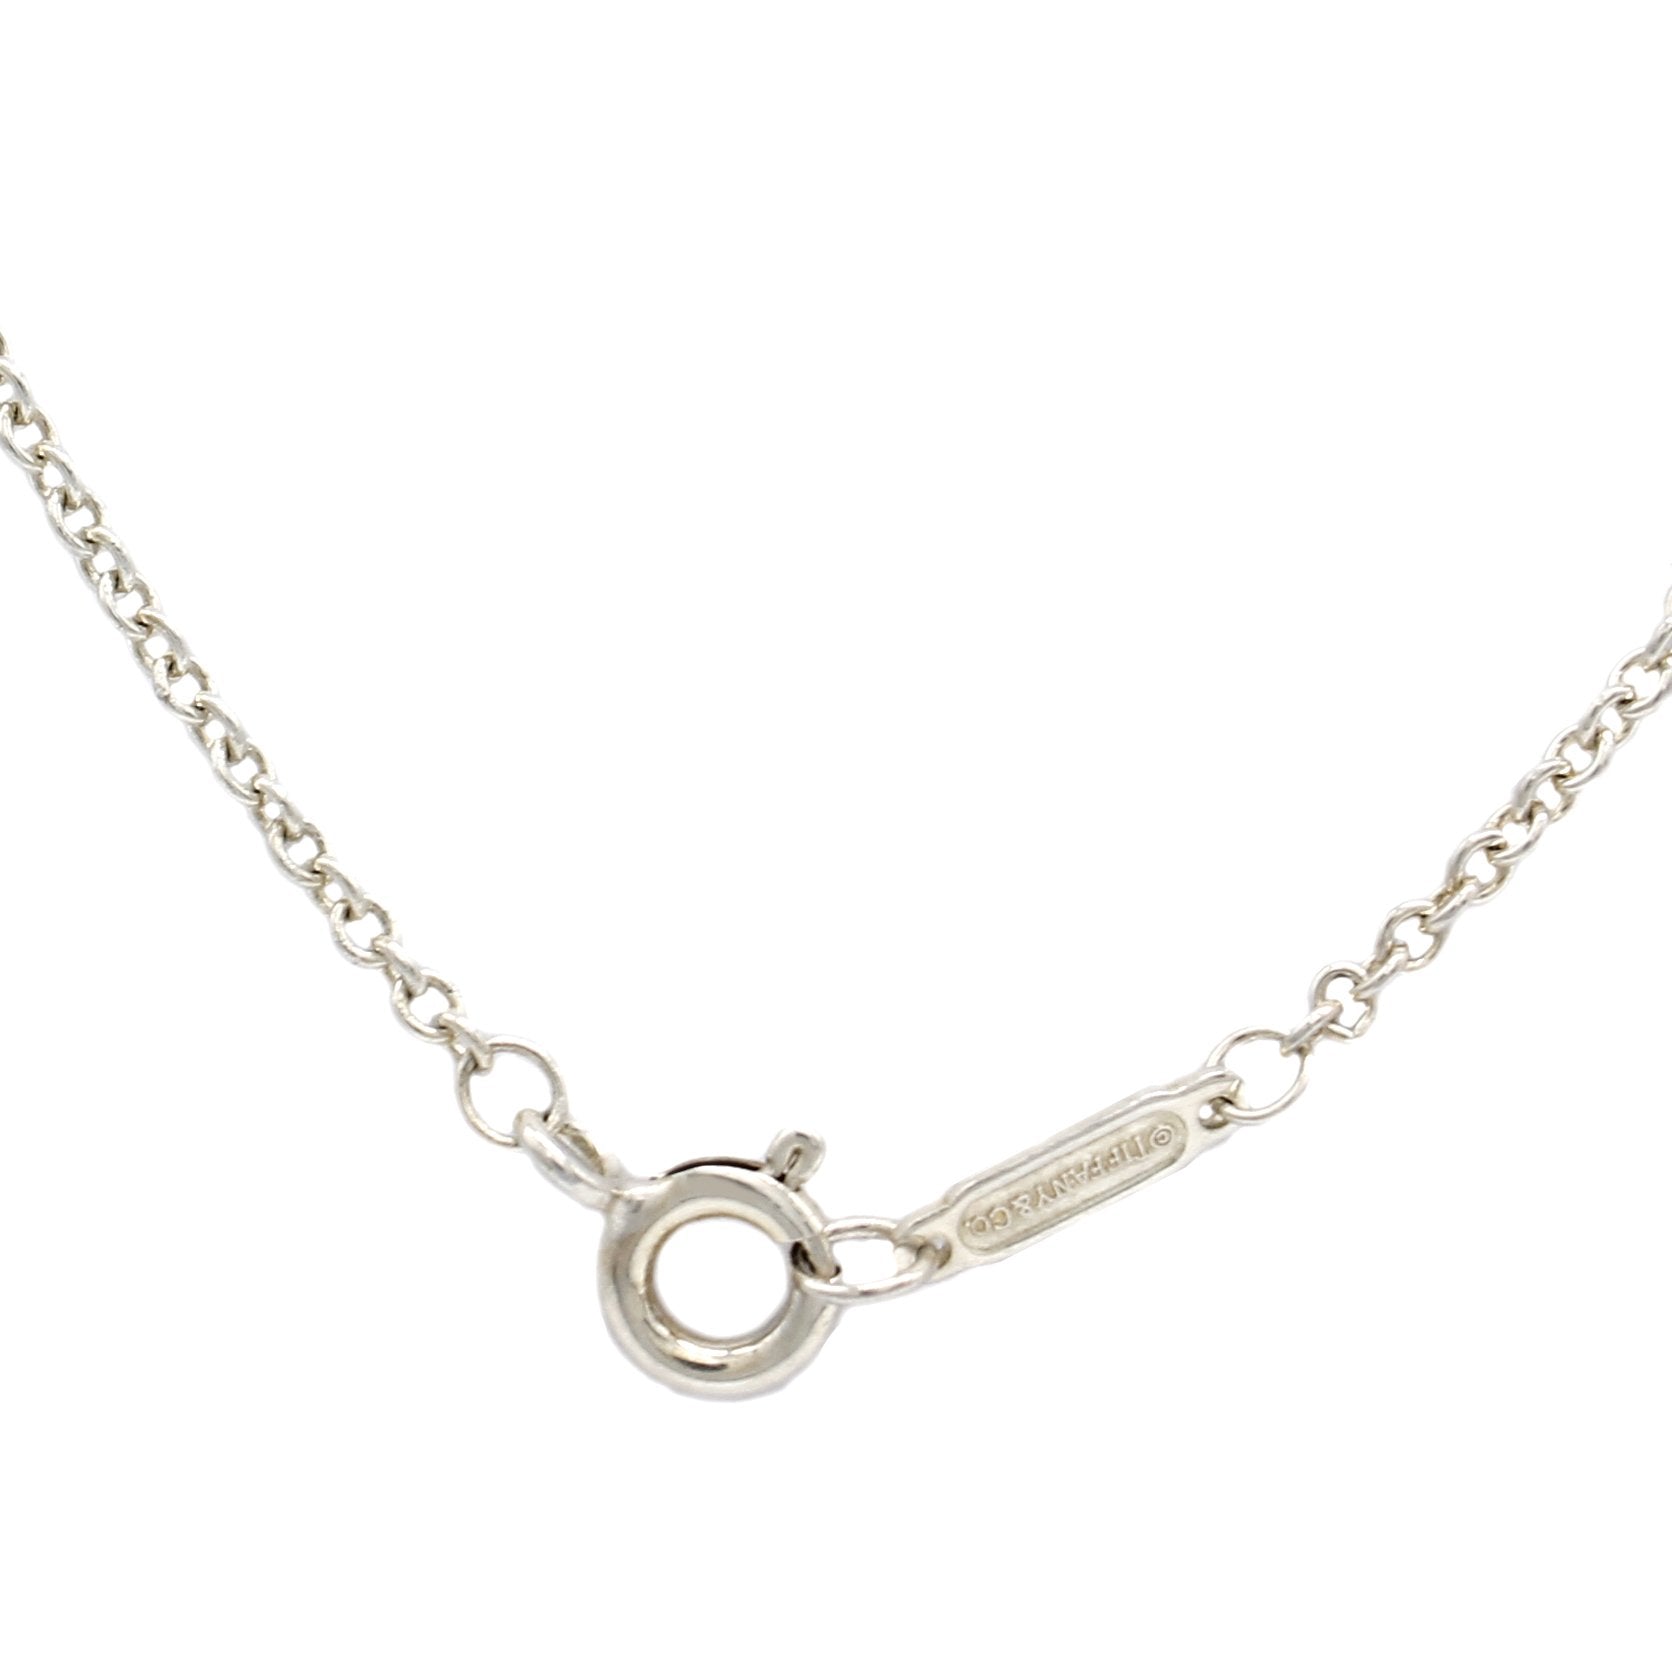 Knot Key Necklace Silver